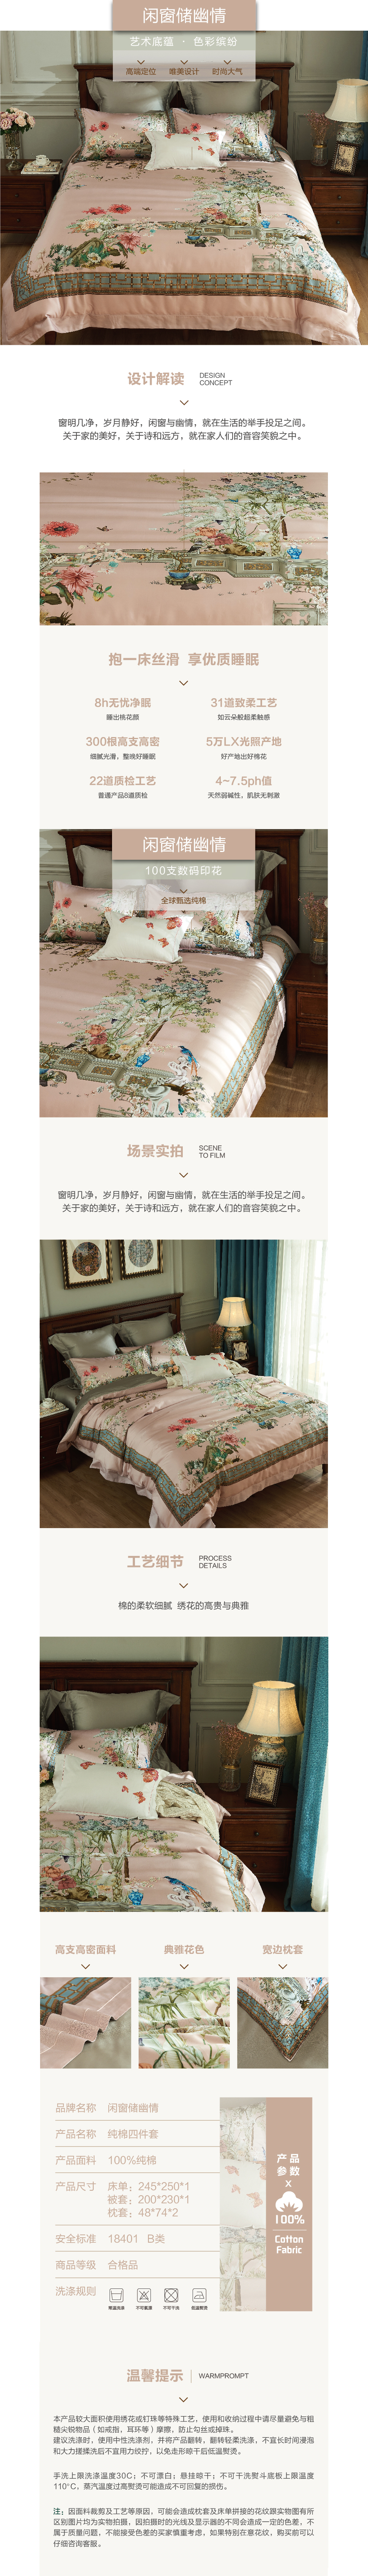 床上用品 纯棉四件套 蕾丝工艺 数码印花系列 闲窗储幽情